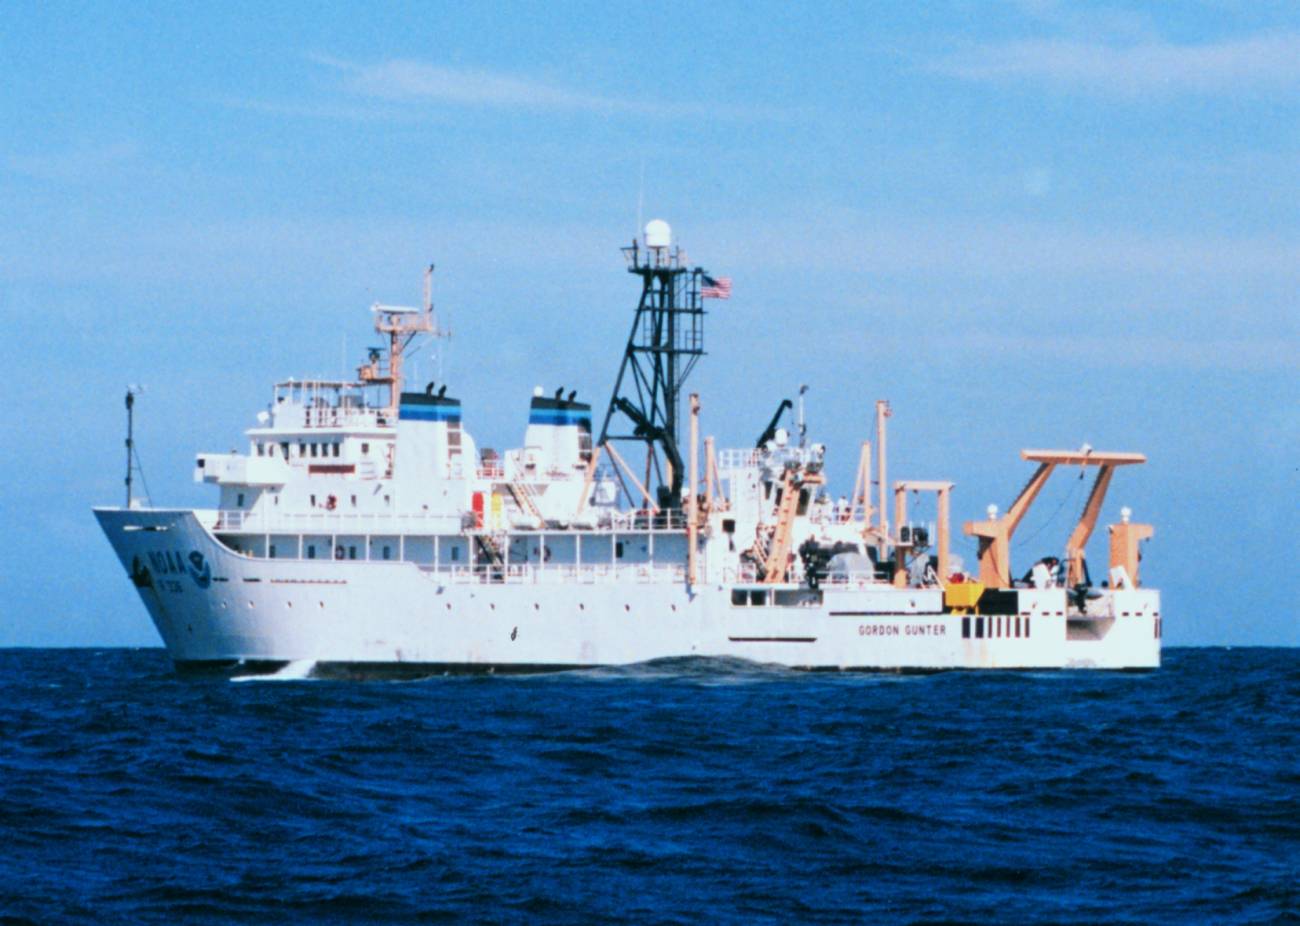 NOAA Ship GORDON GUNTER in the Gulf of Mexico